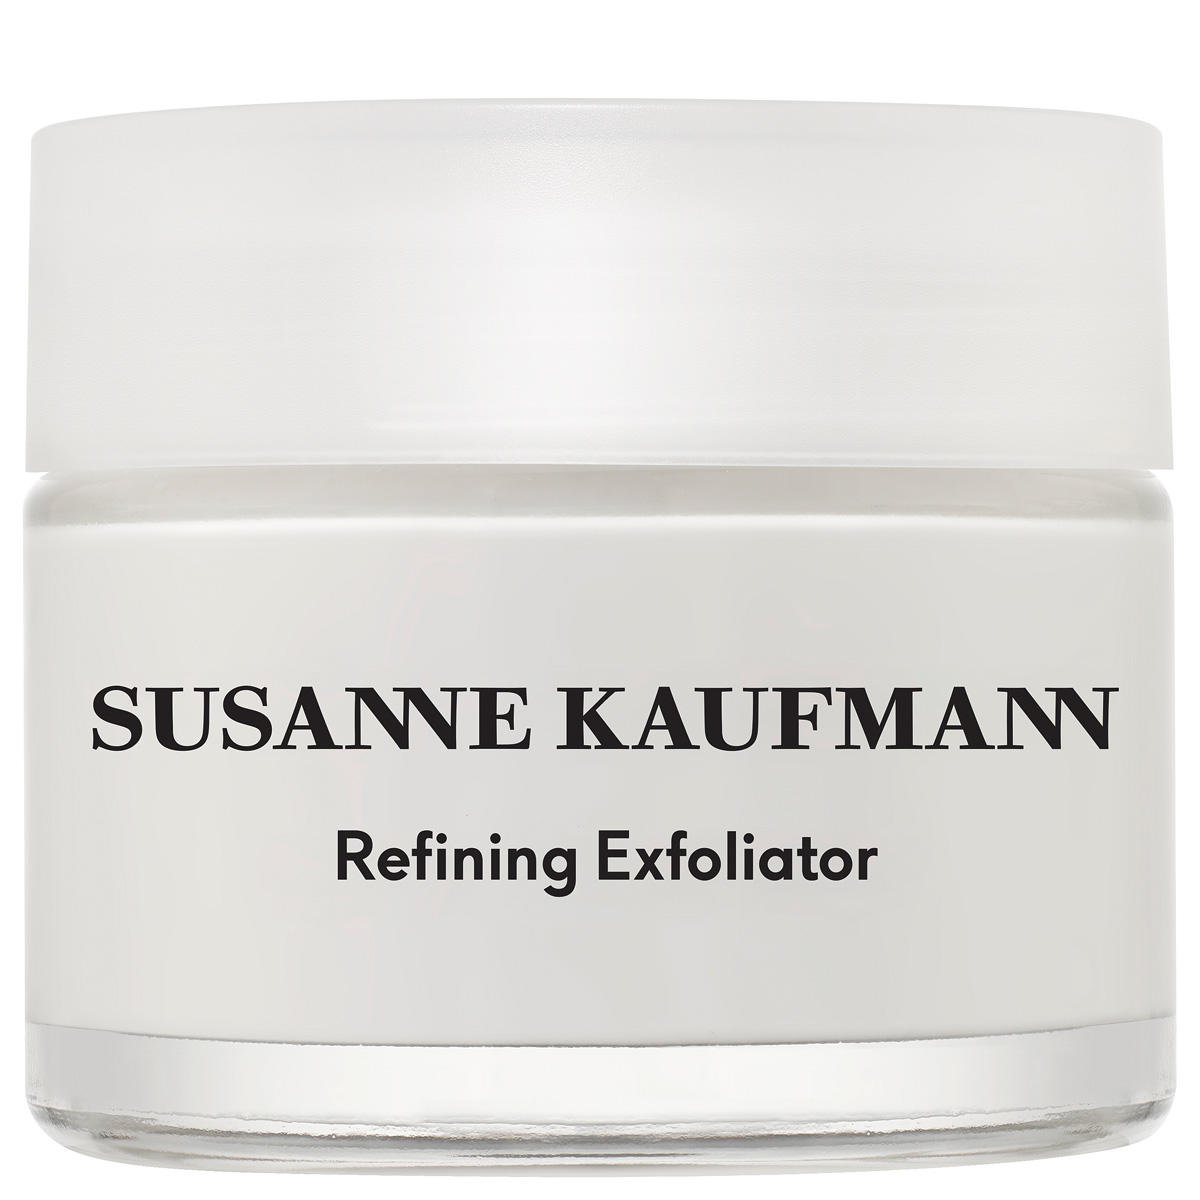 Susanne Kaufmann Gesichtspeeling - Refining Exfoliator 50 ml - 1